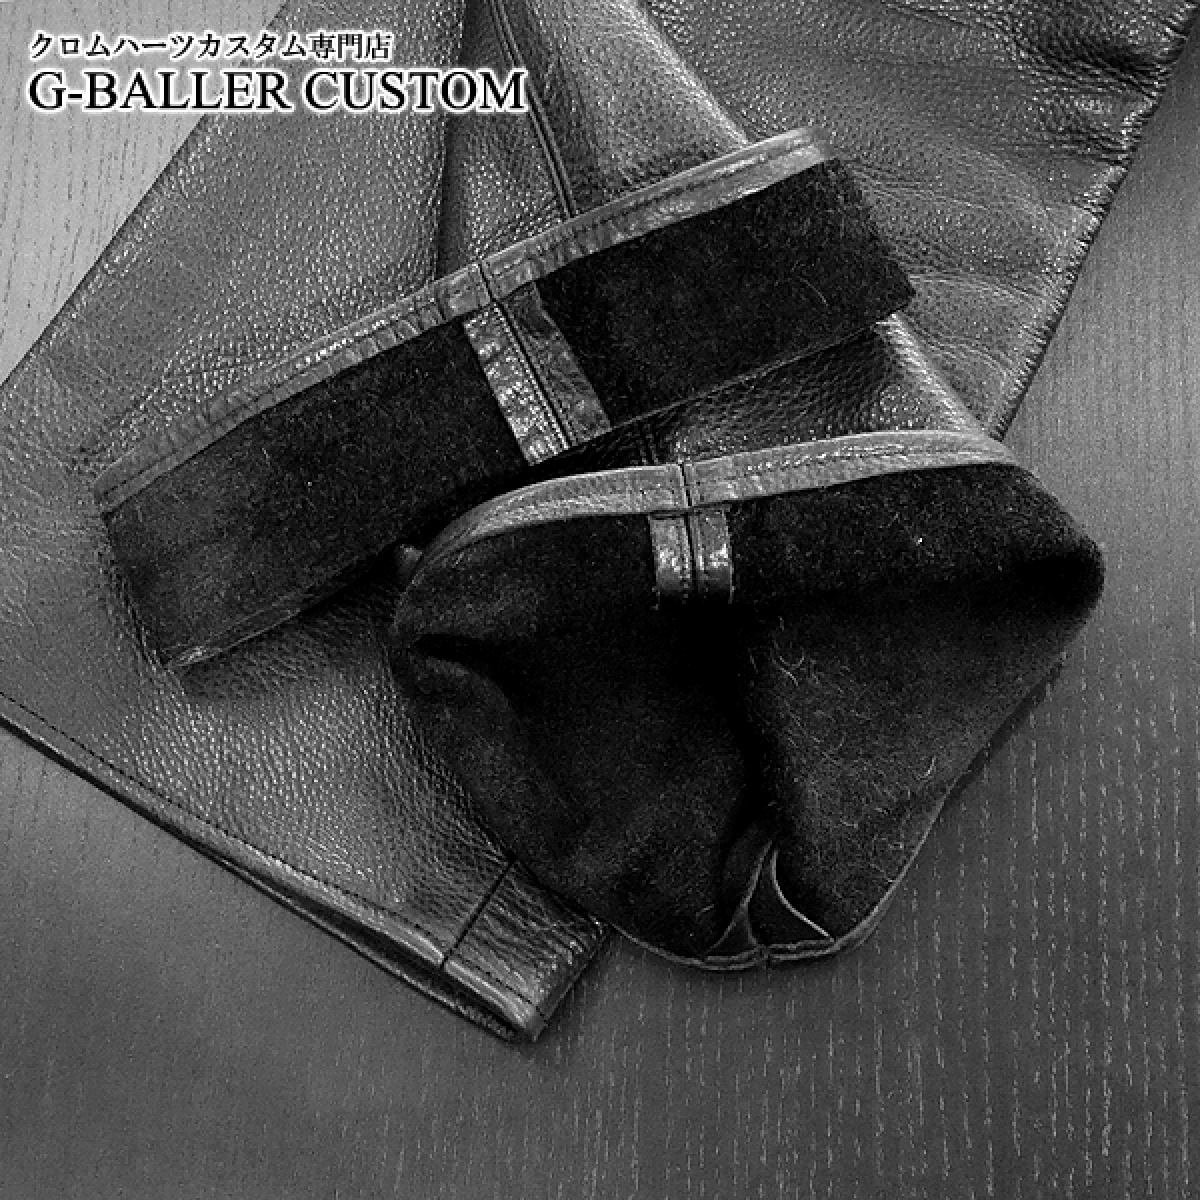 画像4: クロムハーツレザー修理 フレアニー 5ポケット パンツ 裾上げ